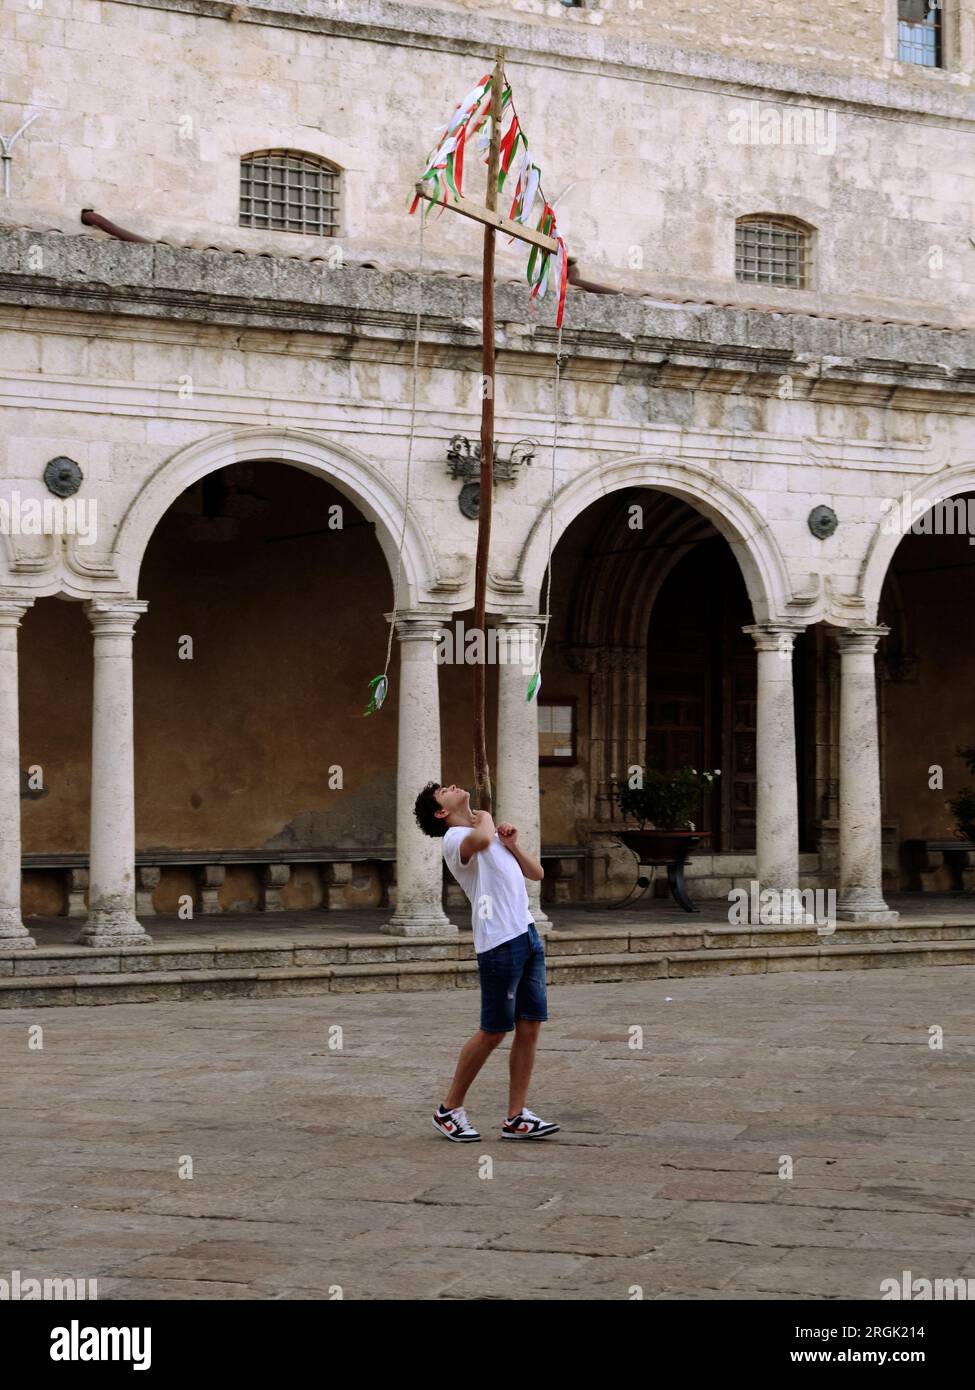 Il ragazzo adolescente sta bilanciando una croce di legno sul petto, Petralia Soprana, Sicilia, Italia Foto Stock